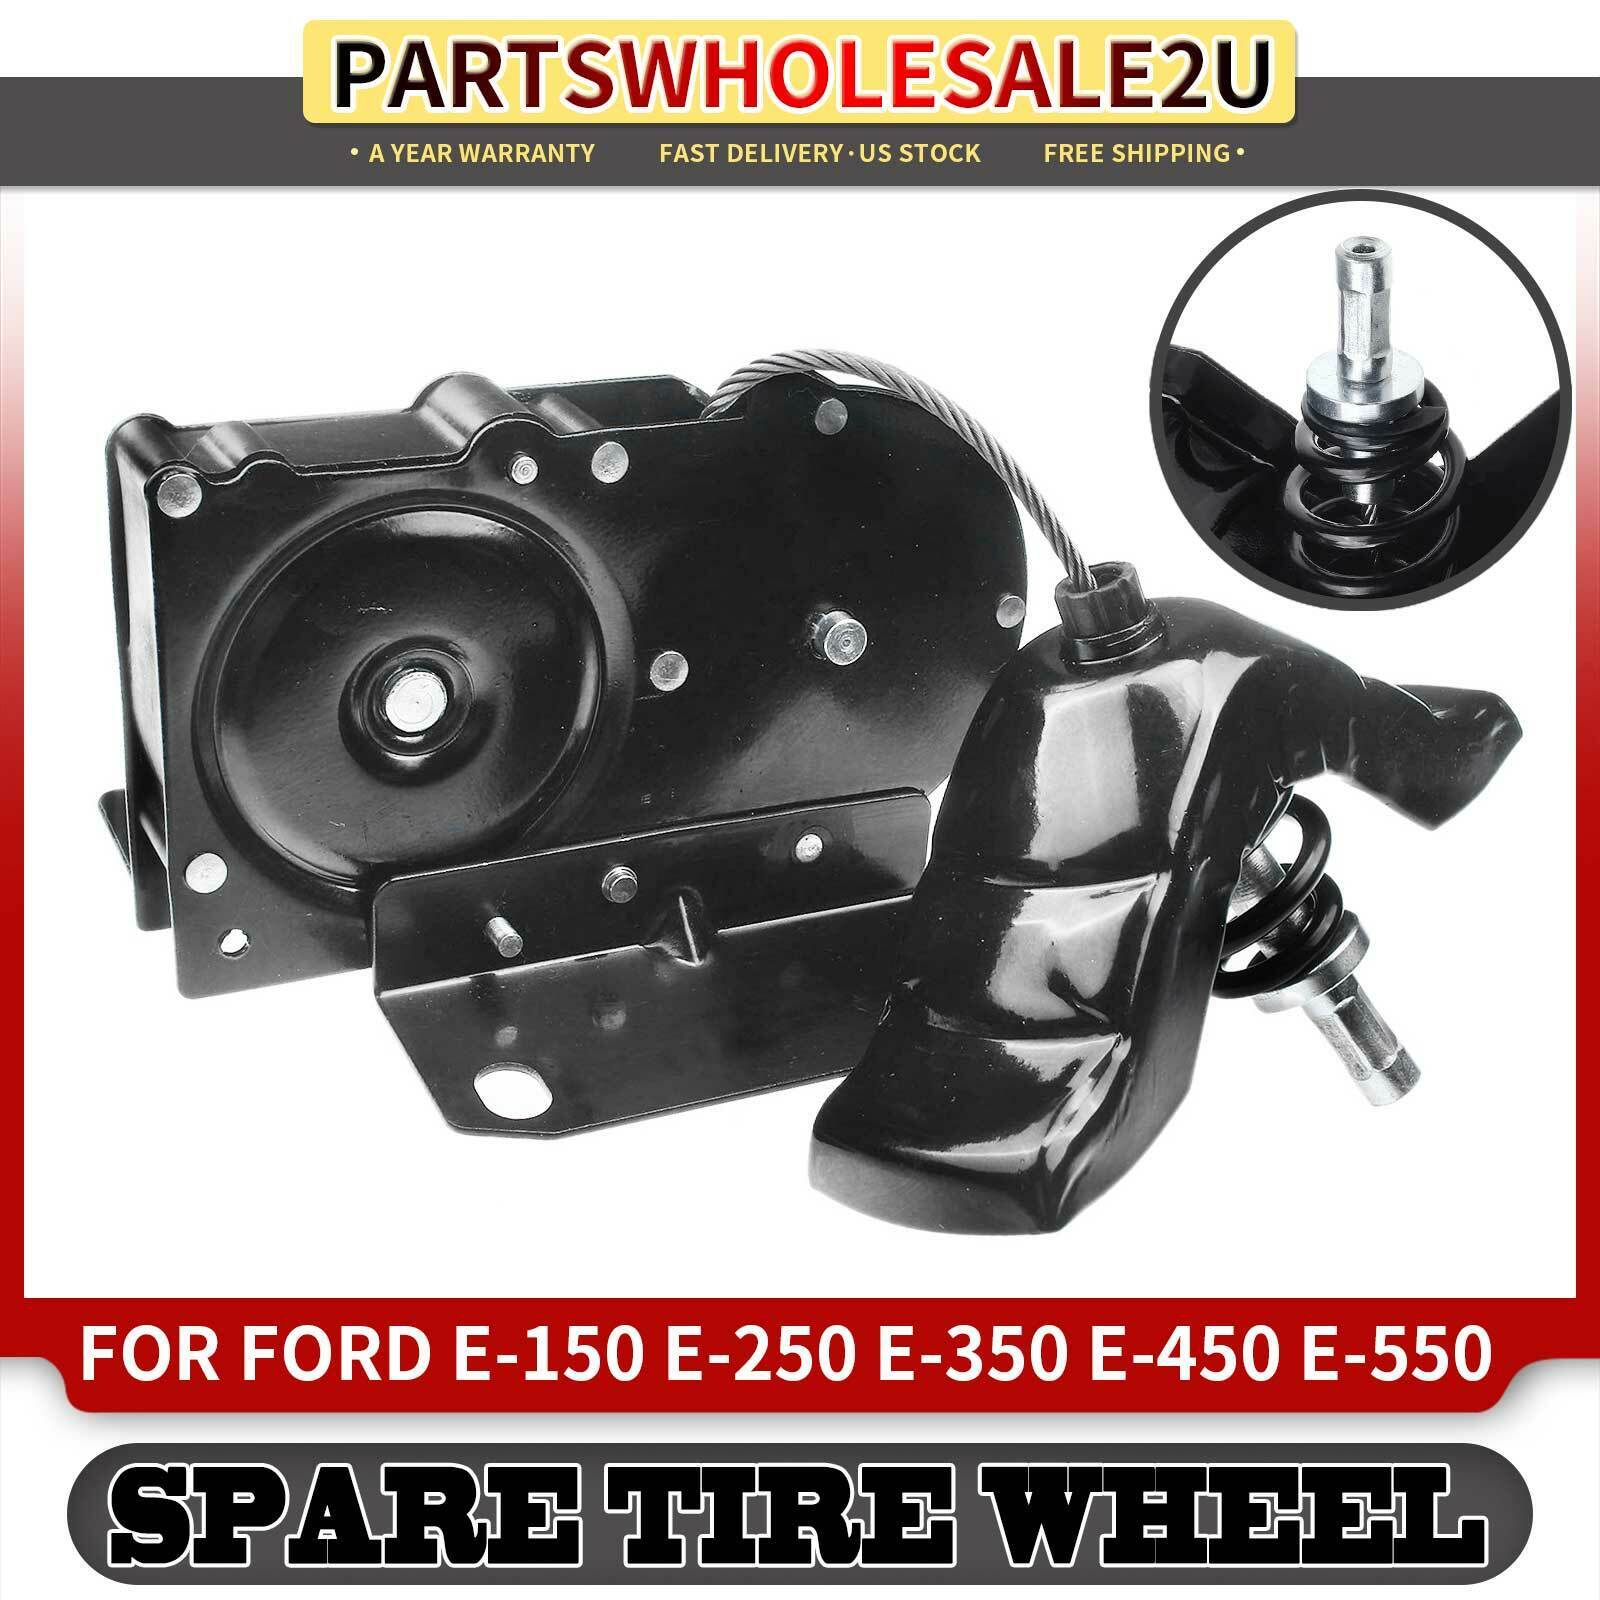 Spare Tire Winch Carrier for Ford E-150 E-250 E-350 E-450 Econoline Super Duty